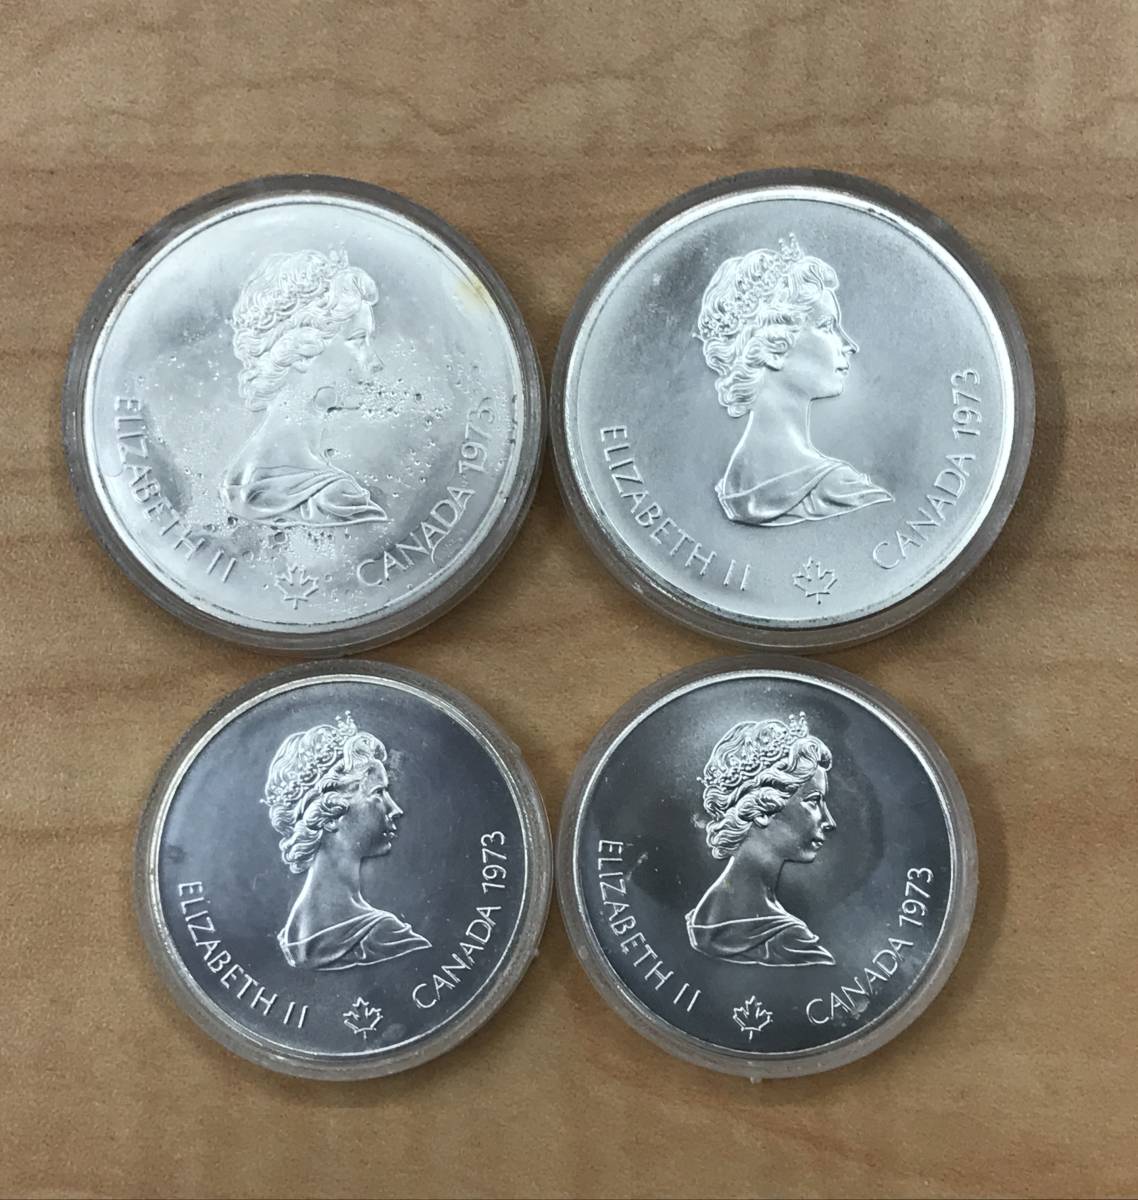 蒙特利爾奧林匹克運動會1976年加拿大紀念硬幣 銀幣5美元10美元4張(件) 原文:モントリオール オリンピック 1976年 カナダ 記念コイン 銀貨 5ドル 10ドル 4枚